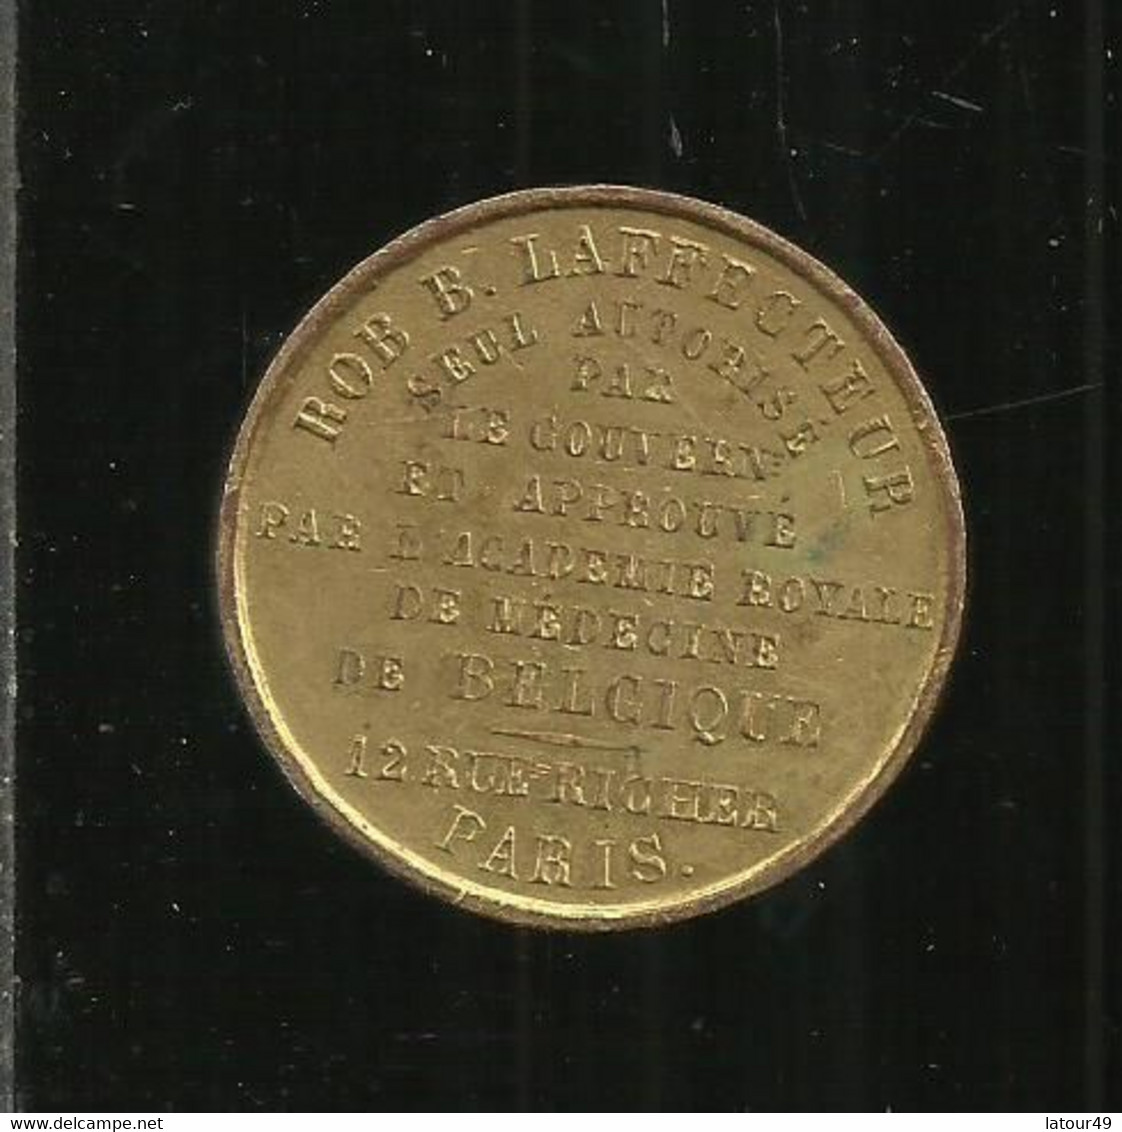 Ancienne Medaille  Academie Rle  De Medecine De Belgique Bob Laffecteur  Seul Autorise Par Le  Gouvernement Et Approuve - Monarquía / Nobleza